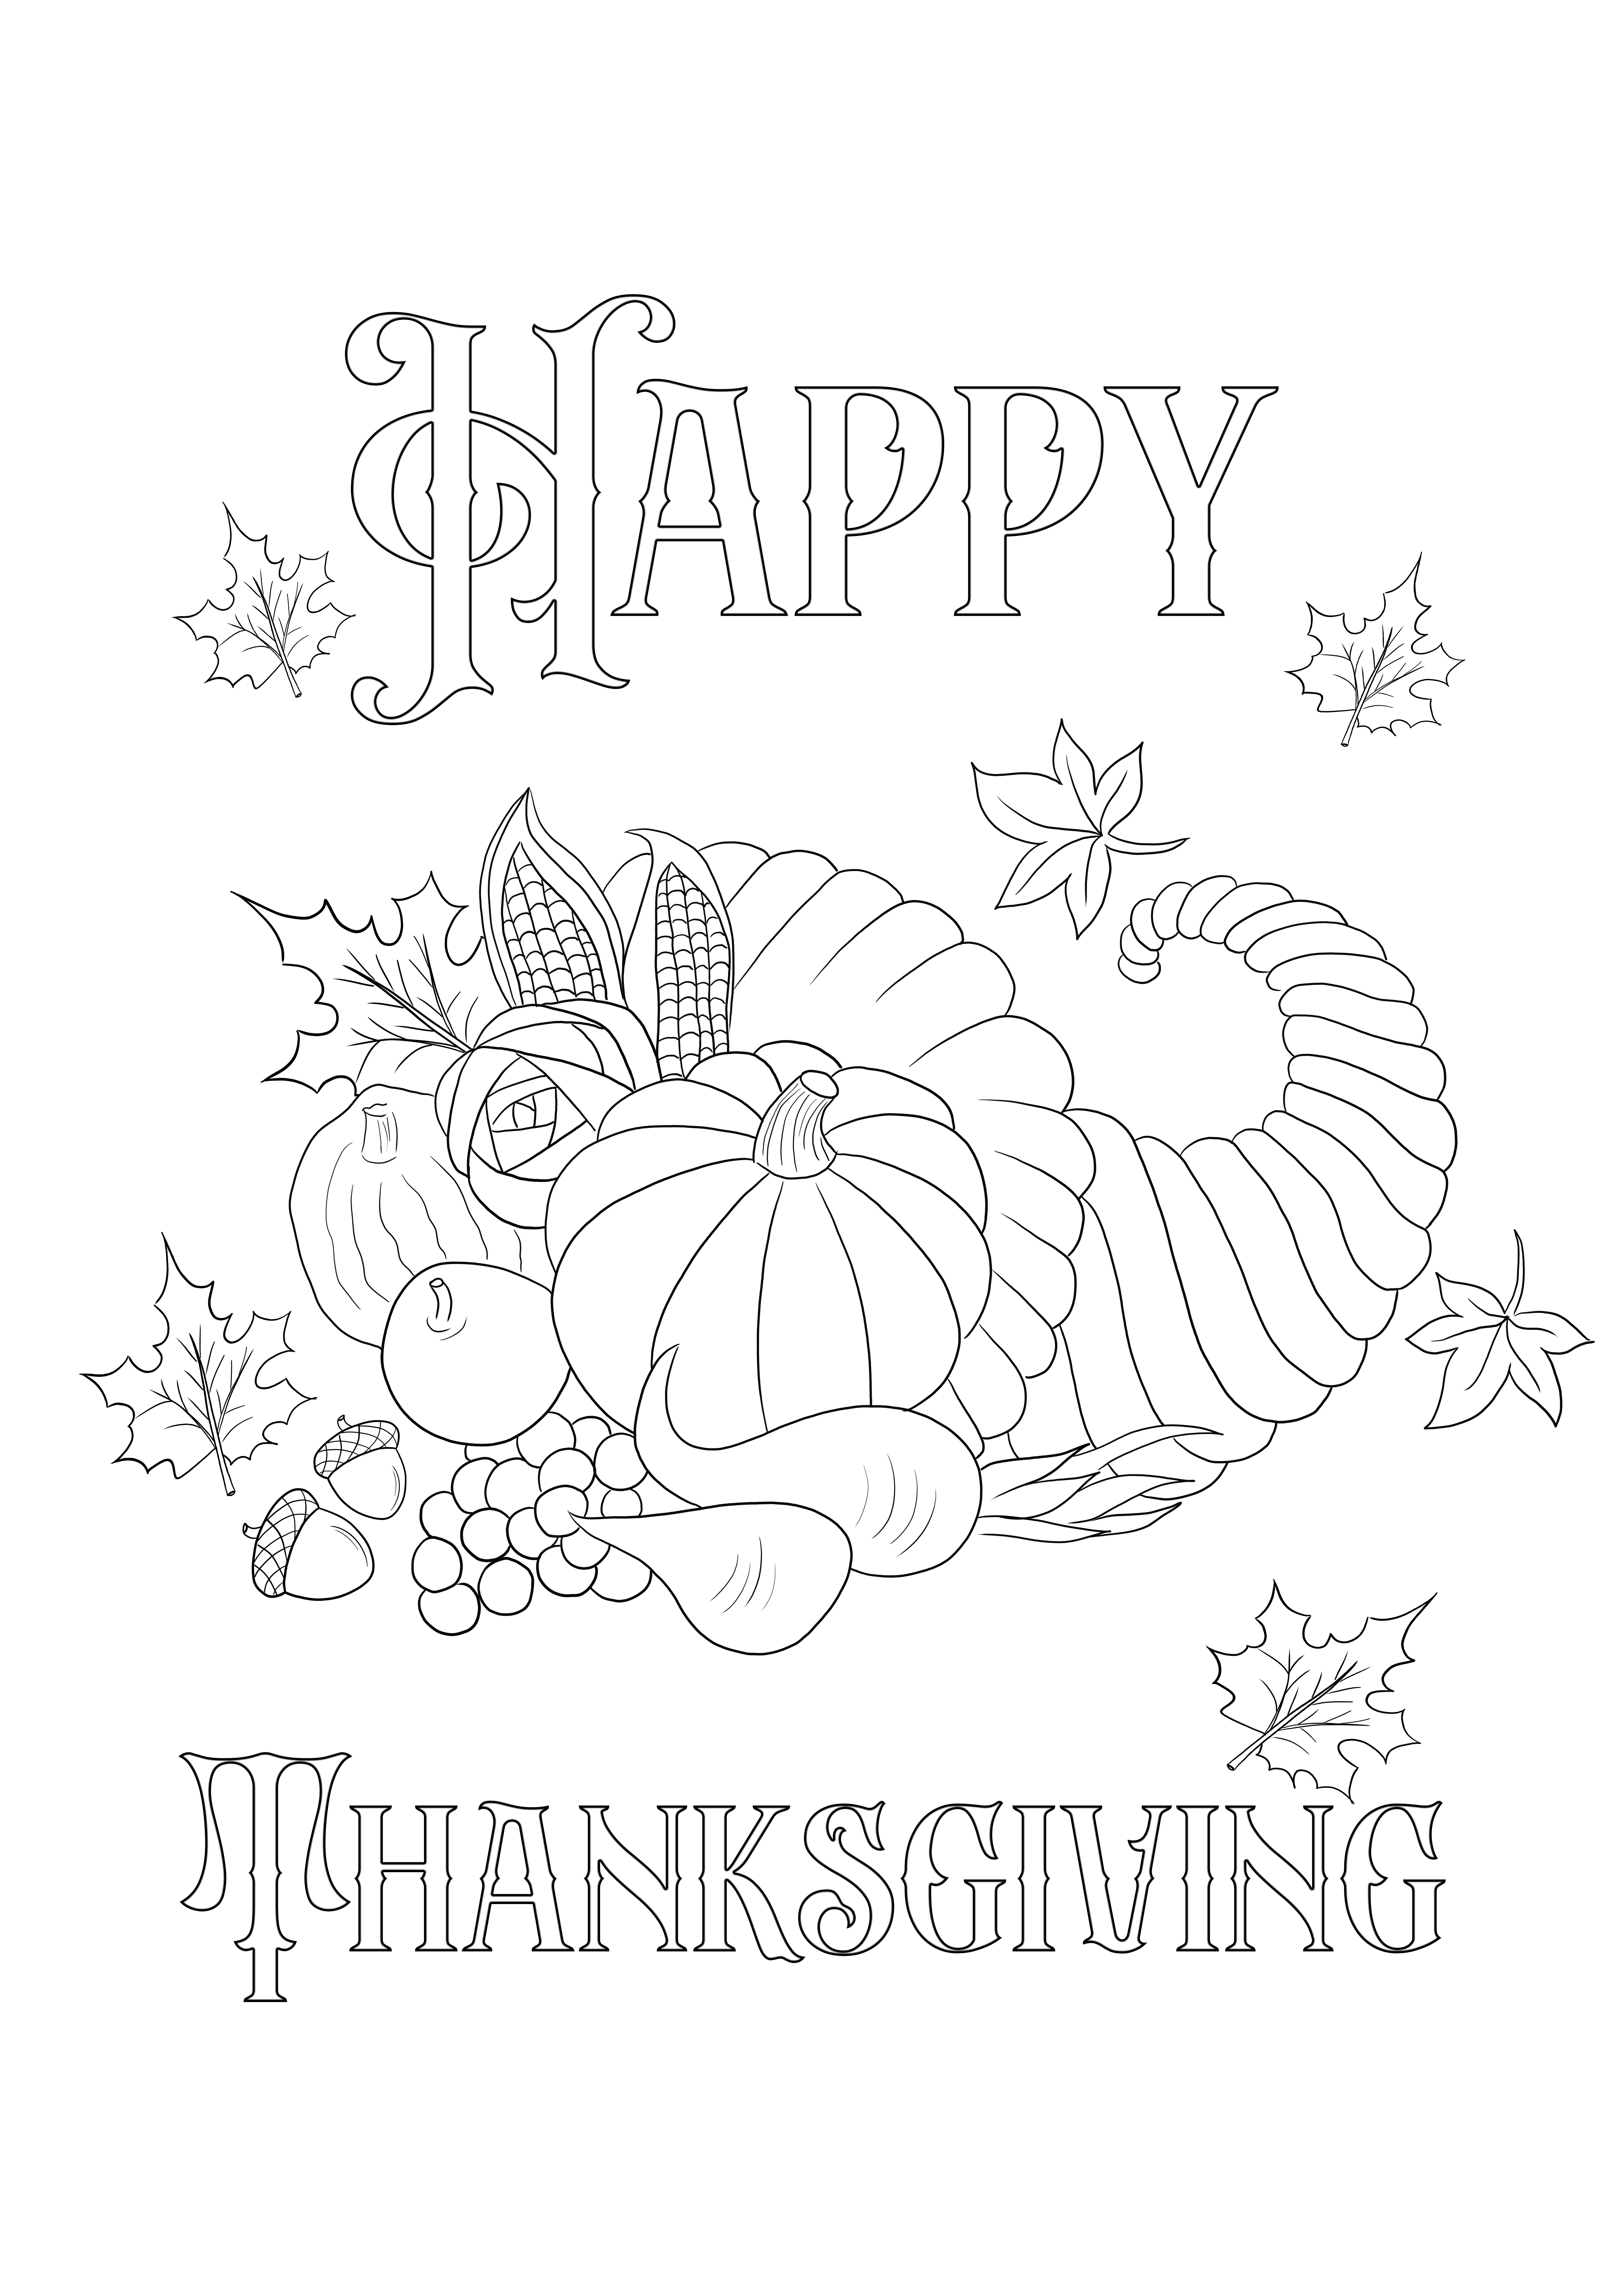 Imprimible gratis de la tarjeta de Acción de Gracias para colorear para niños de todas las edades